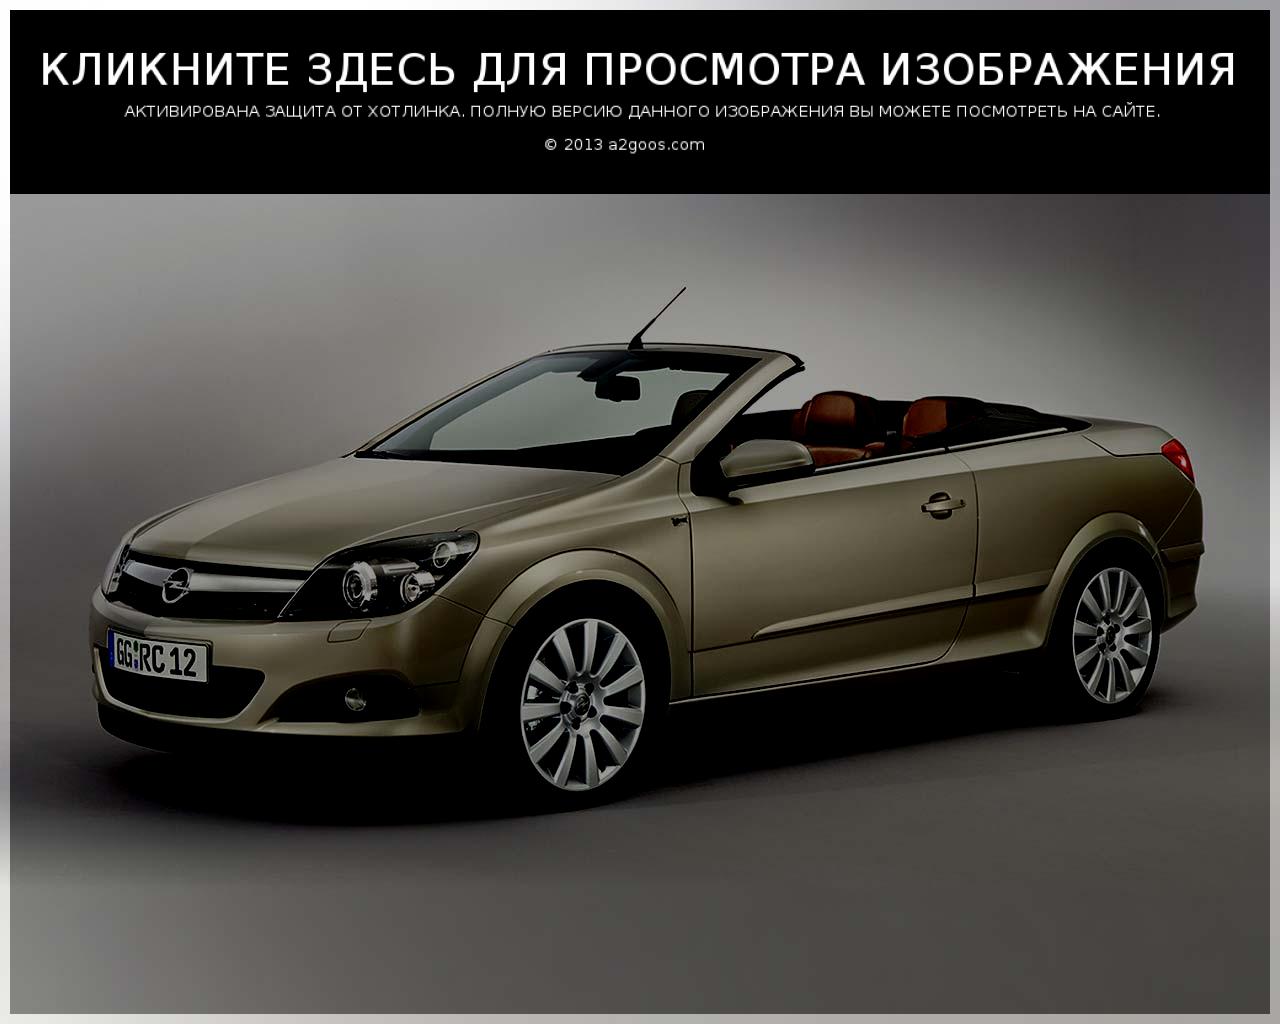 Opel Astra TwinTop: Ð¤Ð¾Ñ‚Ð¾Ð³Ð°Ð»ÐµÑ€ÐµÑ, Ð¿Ð¾Ð»Ð½Ð°Ñ Ð¸Ð½Ñ„Ð¾Ñ€Ð¼Ð°Ñ†Ð¸Ñ Ð¾ Ð¼Ð¾Ð´ÐµÐ»Ð¸ ...